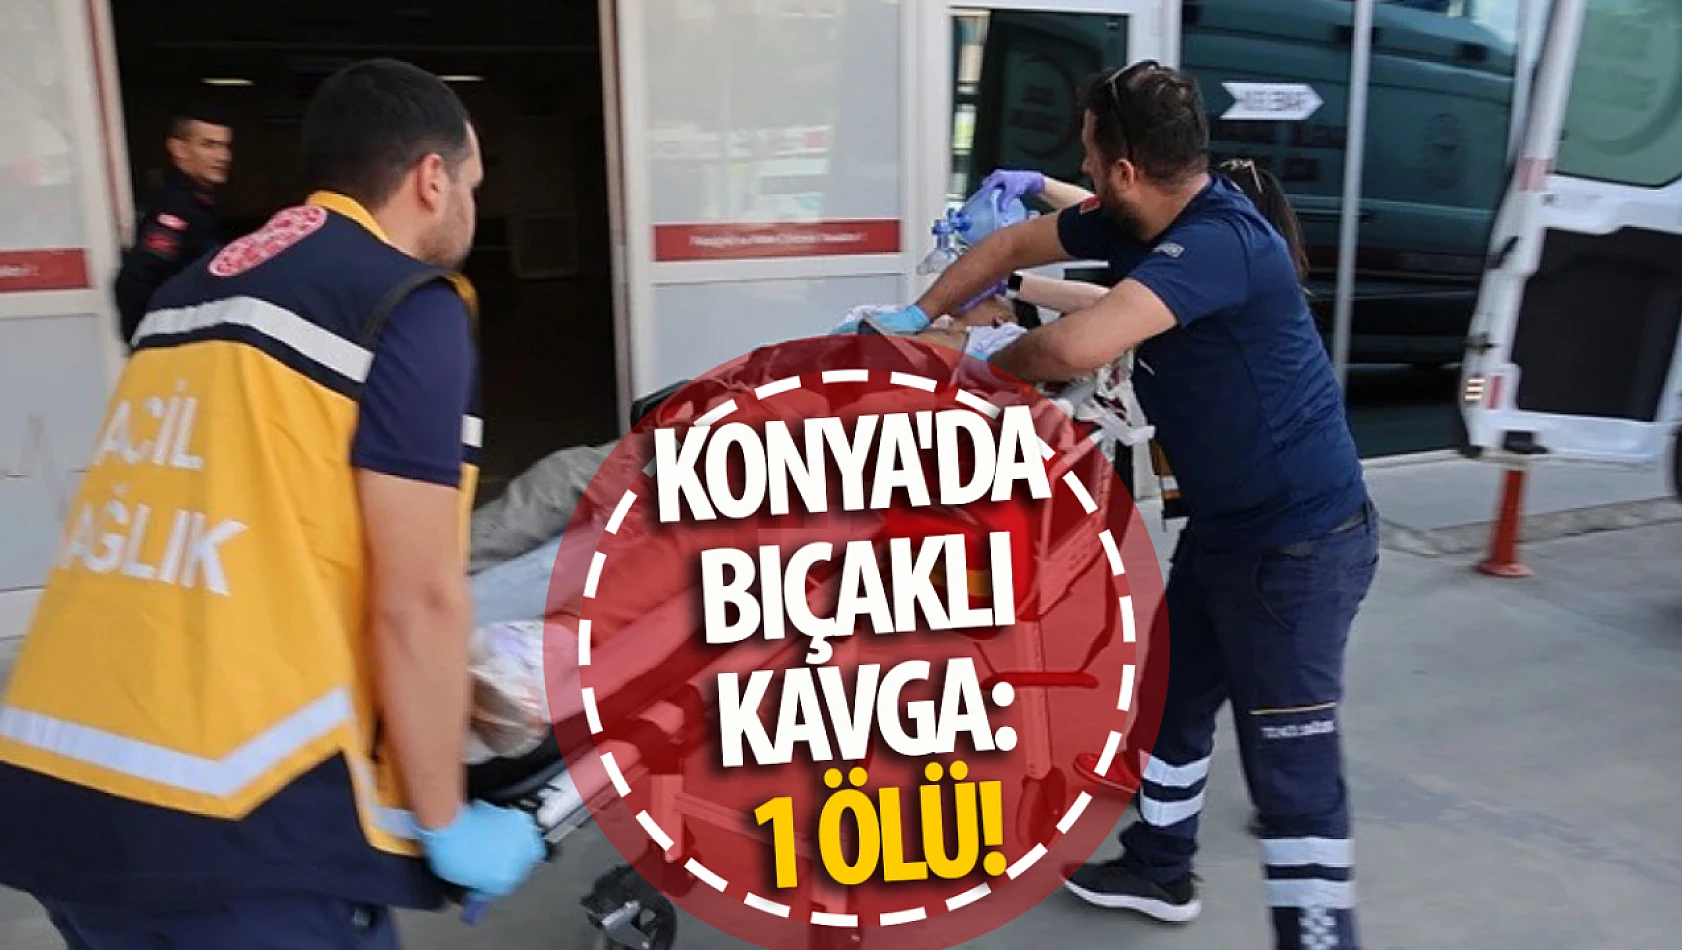 Konya'da bıçaklı kavga: 1 ölü!